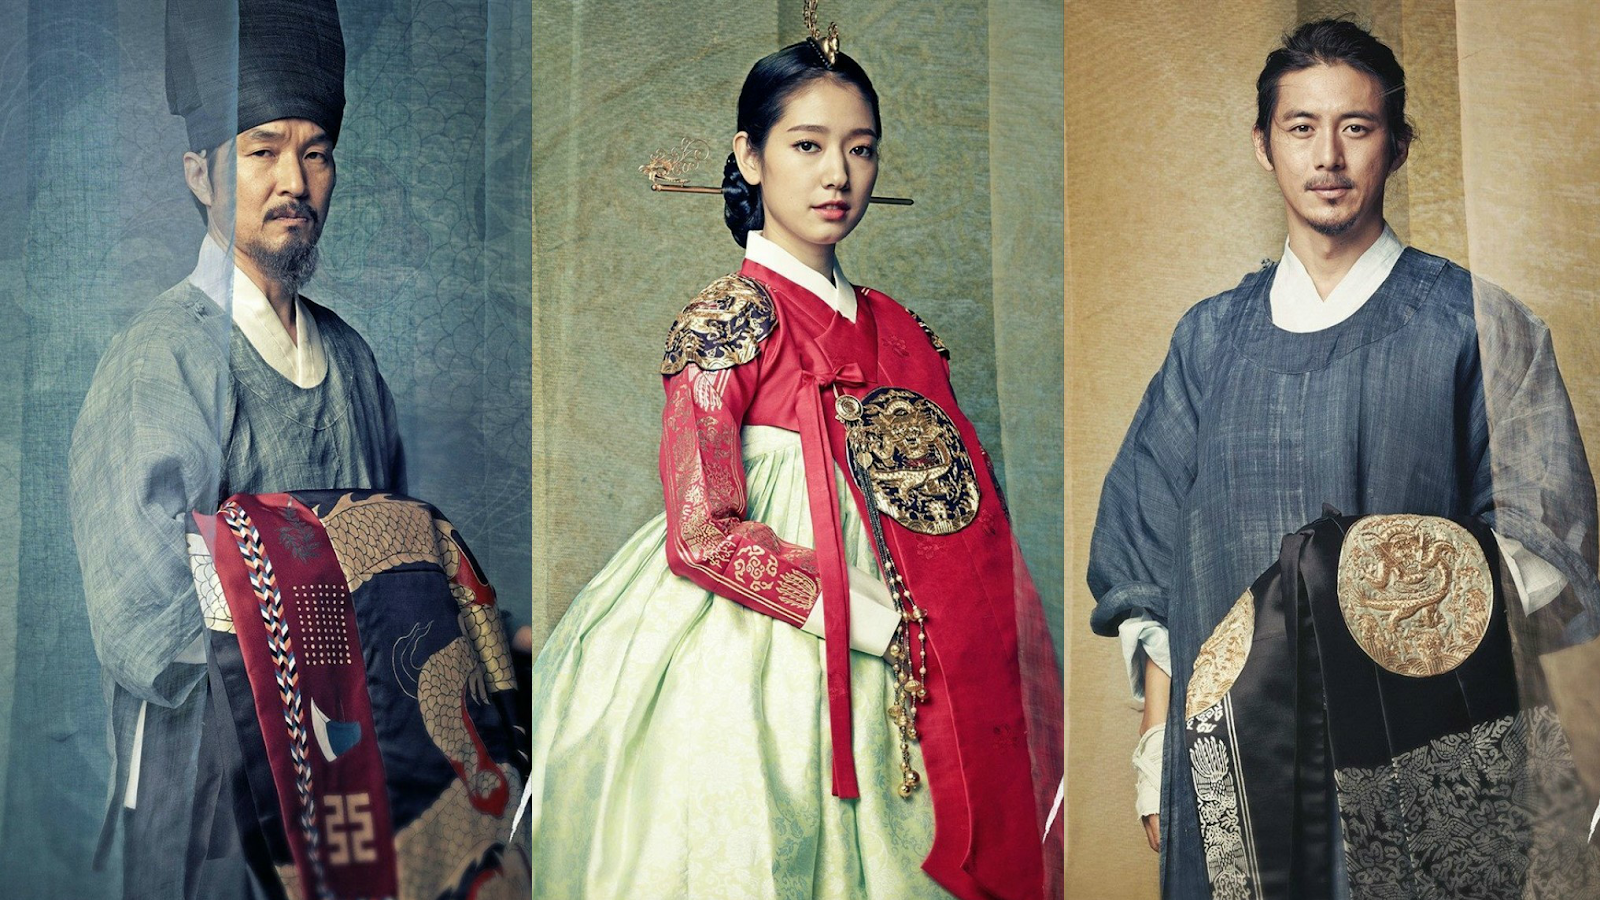 The Royal Tailor (2014) |  บันทึกลับช่างอาภรณ์แห่งโชซอน